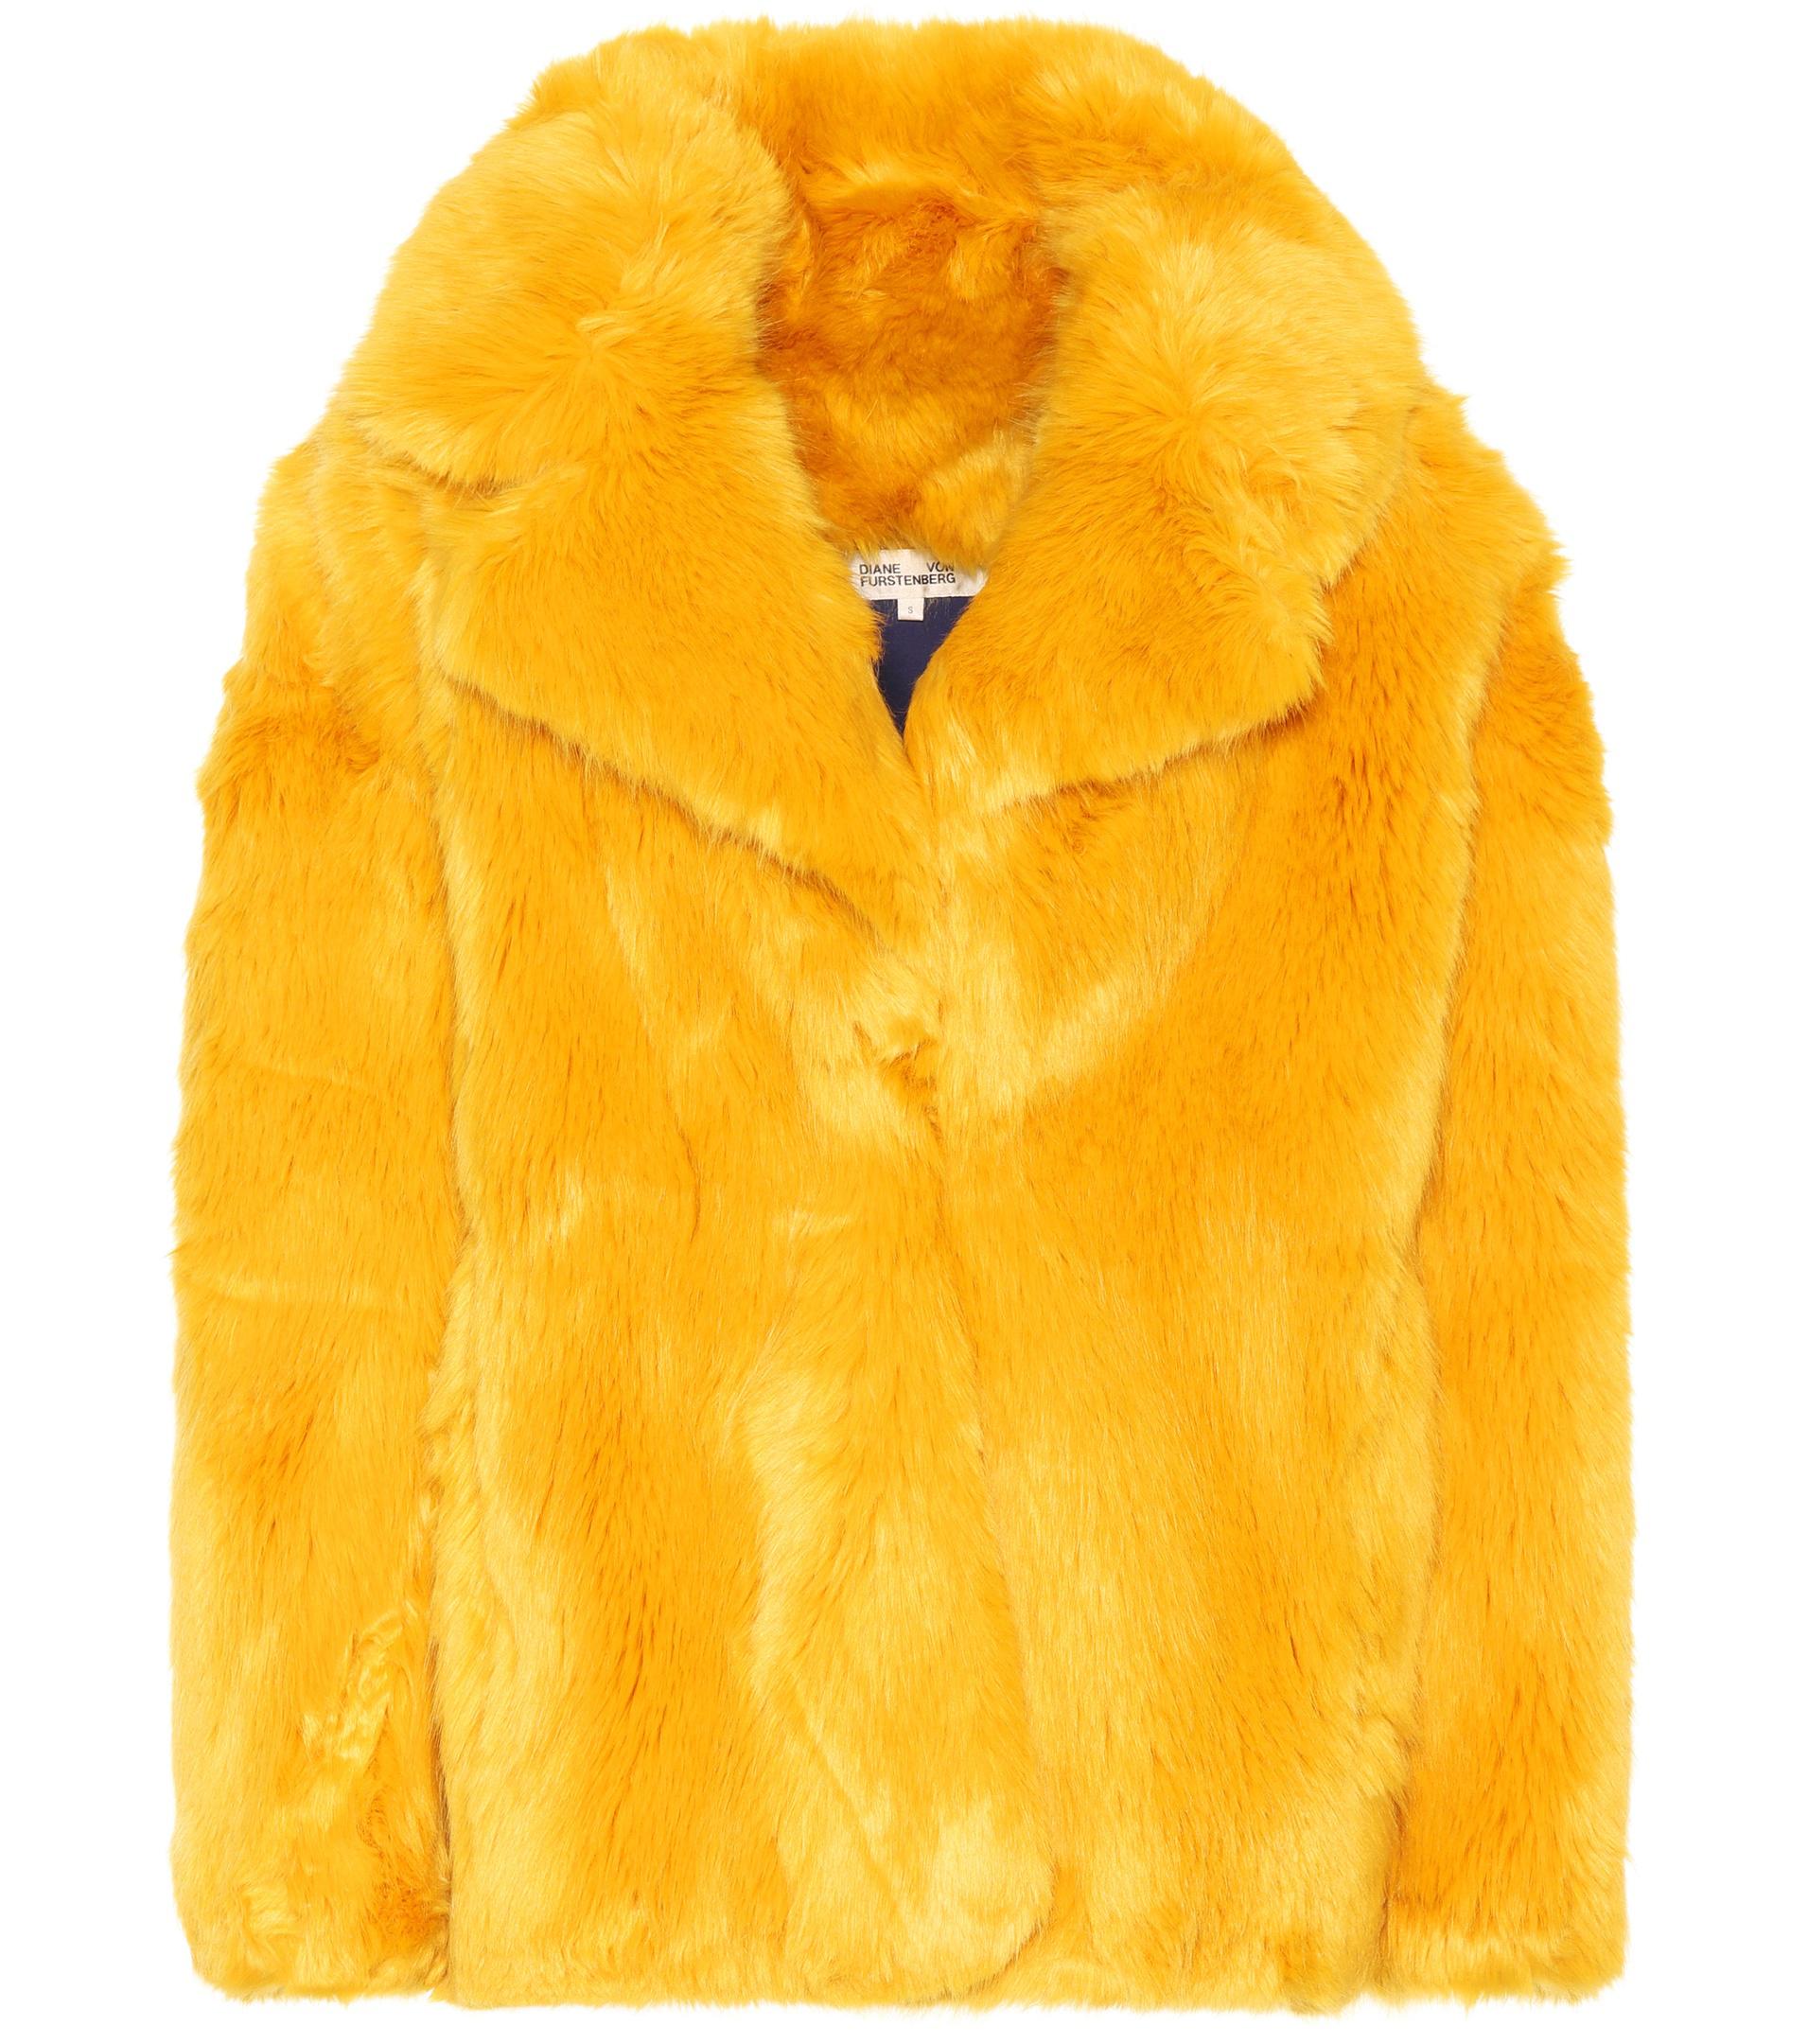 Diane von Furstenberg Faux Fur Jacket in Yellow - Lyst